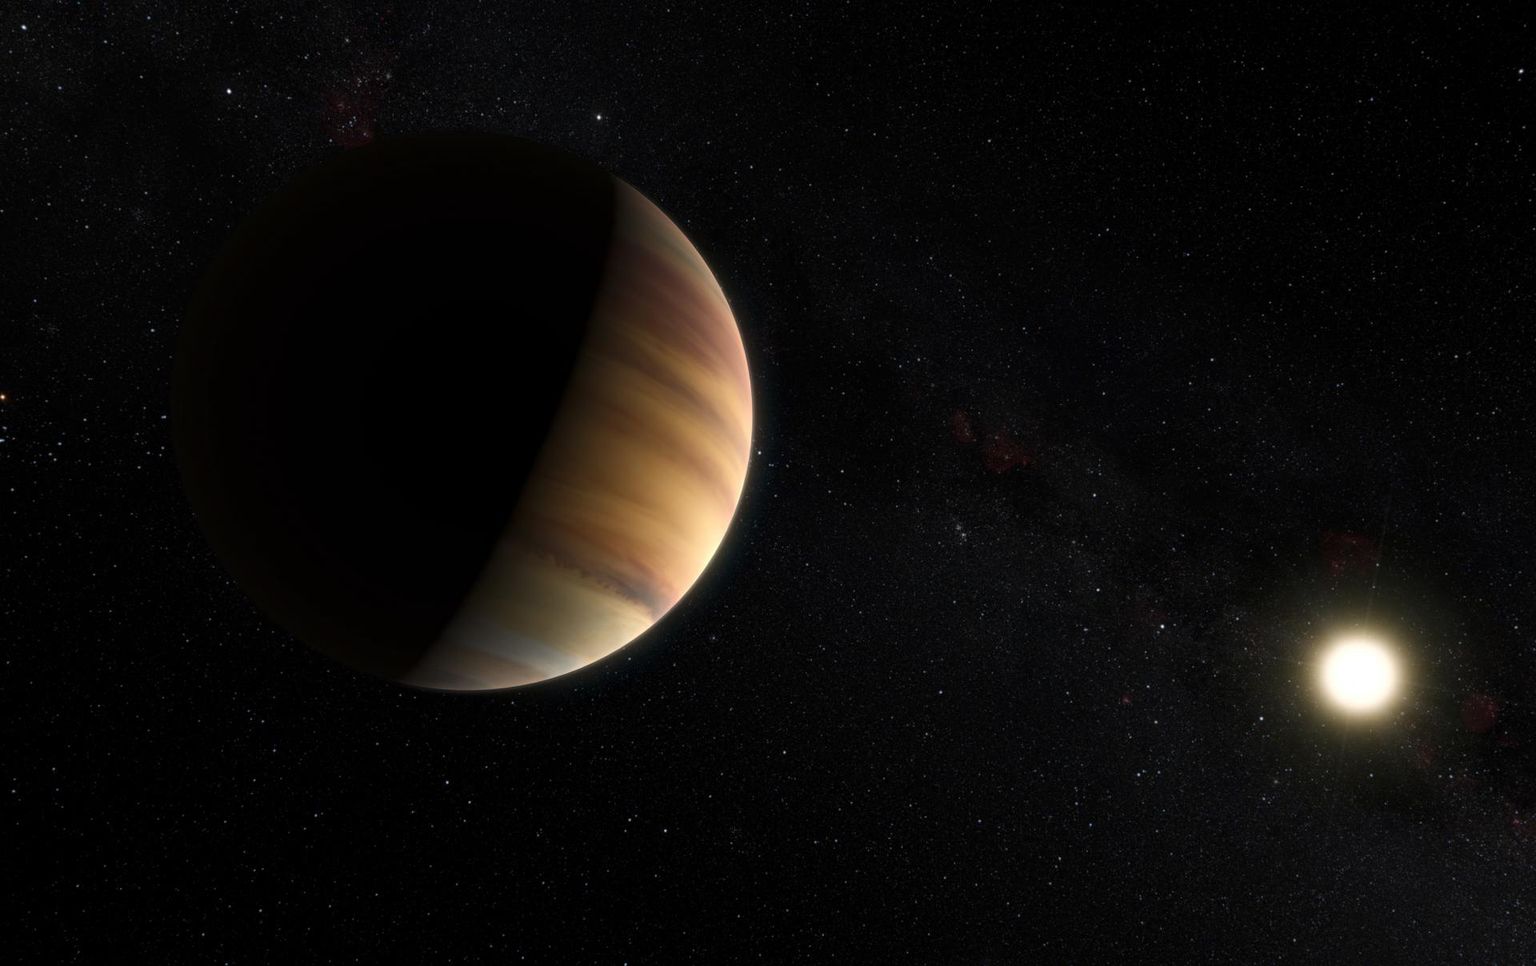 Kunstniku kujutis esimesest eksoplaneedist 51 Pegasi b, mille avastamine muutis järsult teaduslikku ettekujutust päikesesüsteemi-välistest planeetidest.